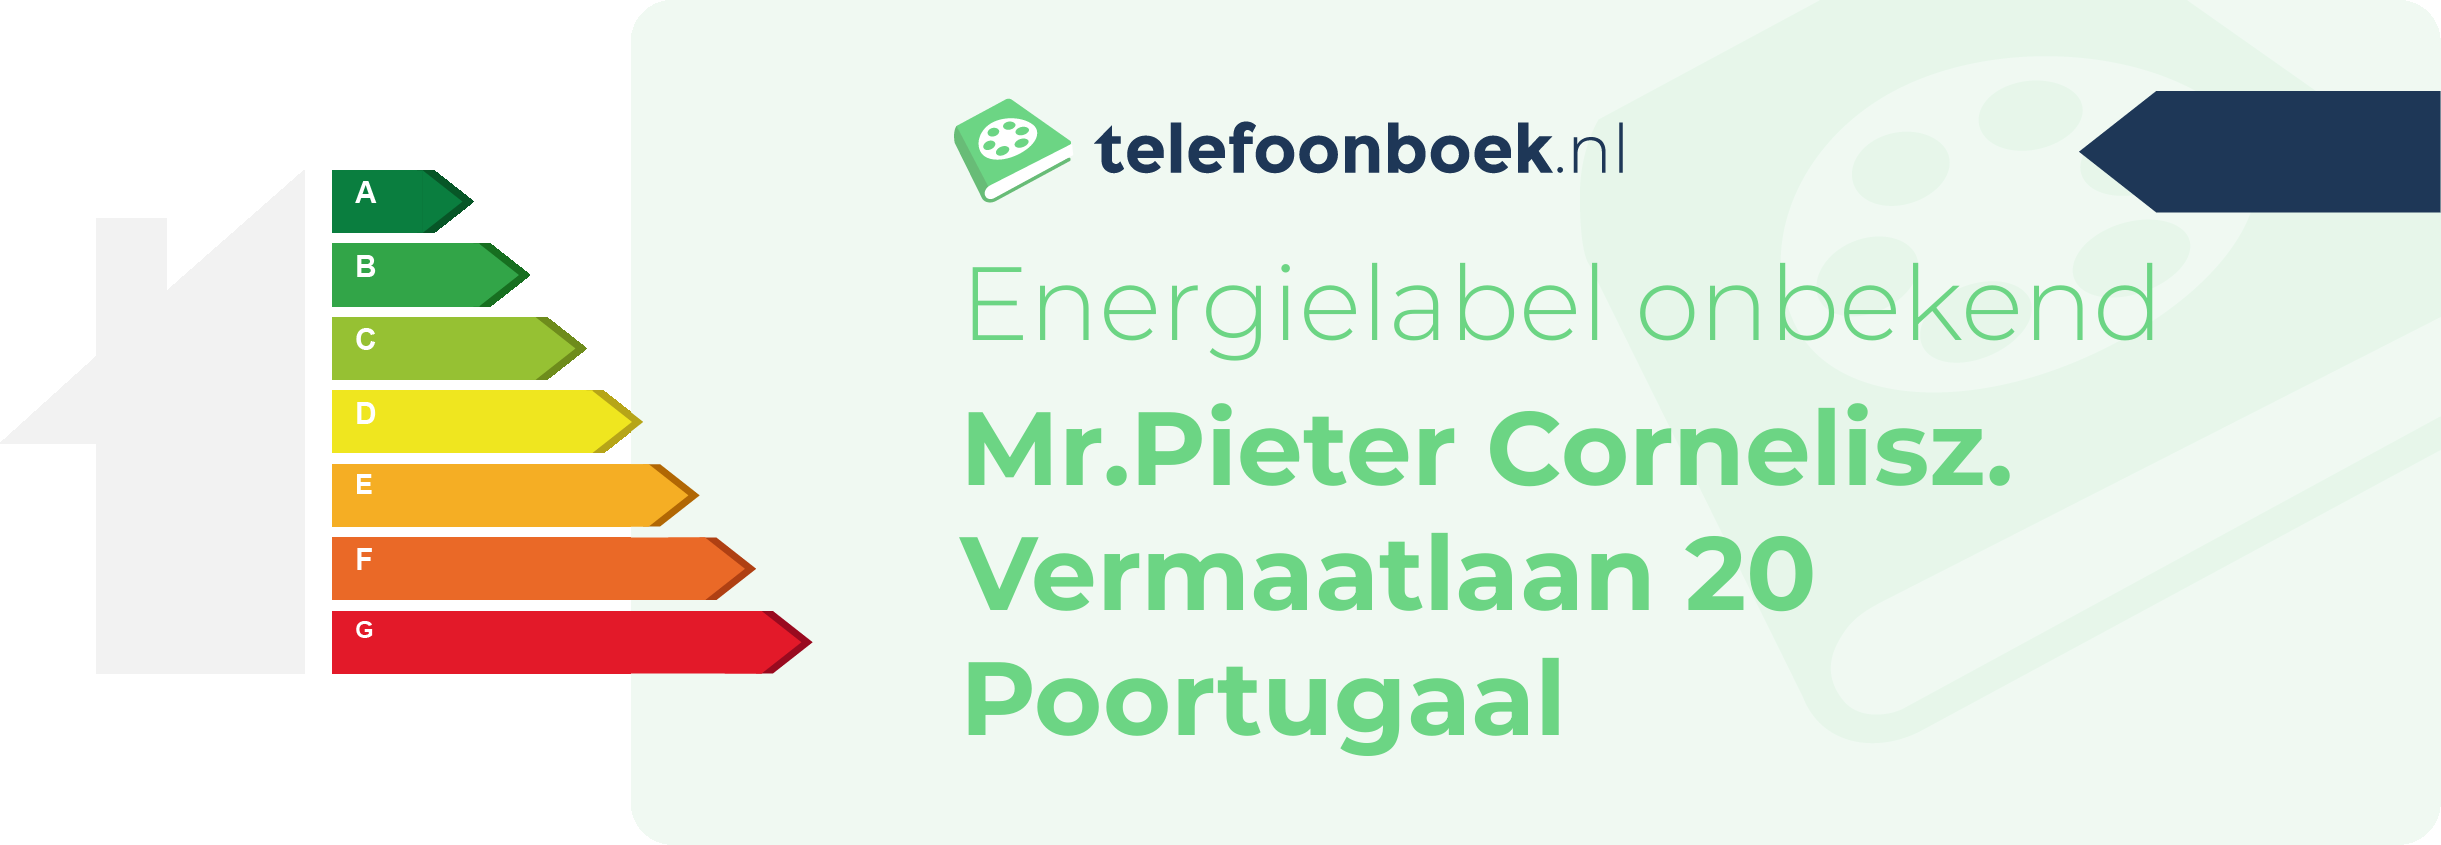 Energielabel Mr.Pieter Cornelisz. Vermaatlaan 20 Poortugaal